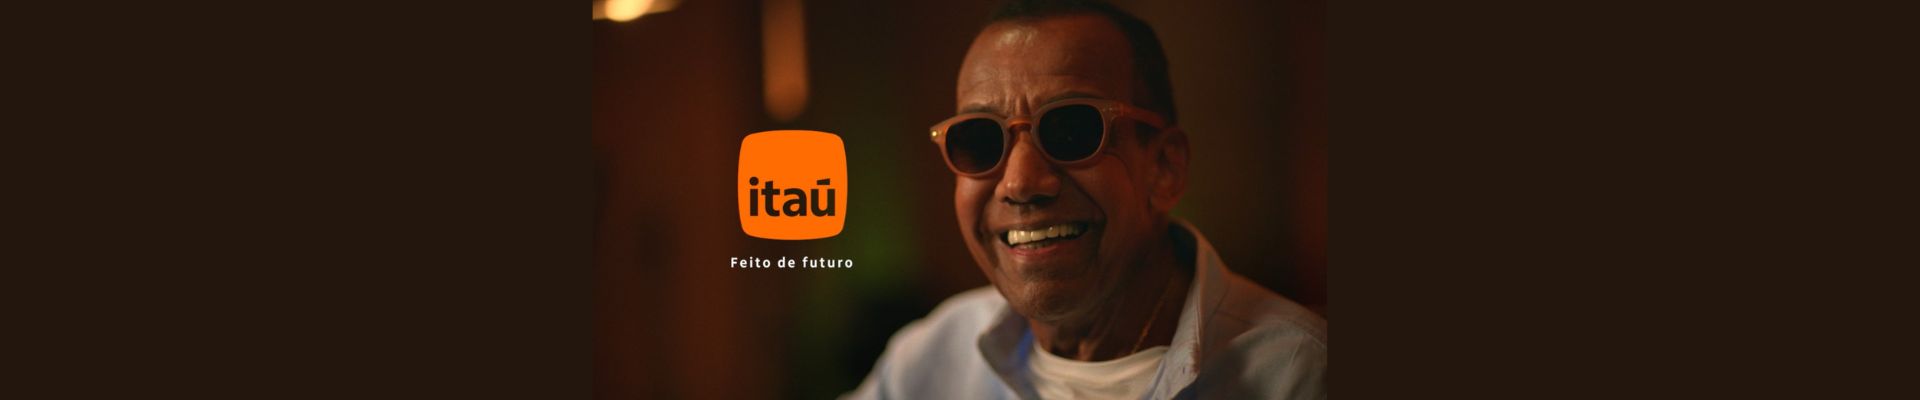 Em parceria com a agência Africa Creative, Itaú lança mais um filme da campanha “Feito de Futuro”